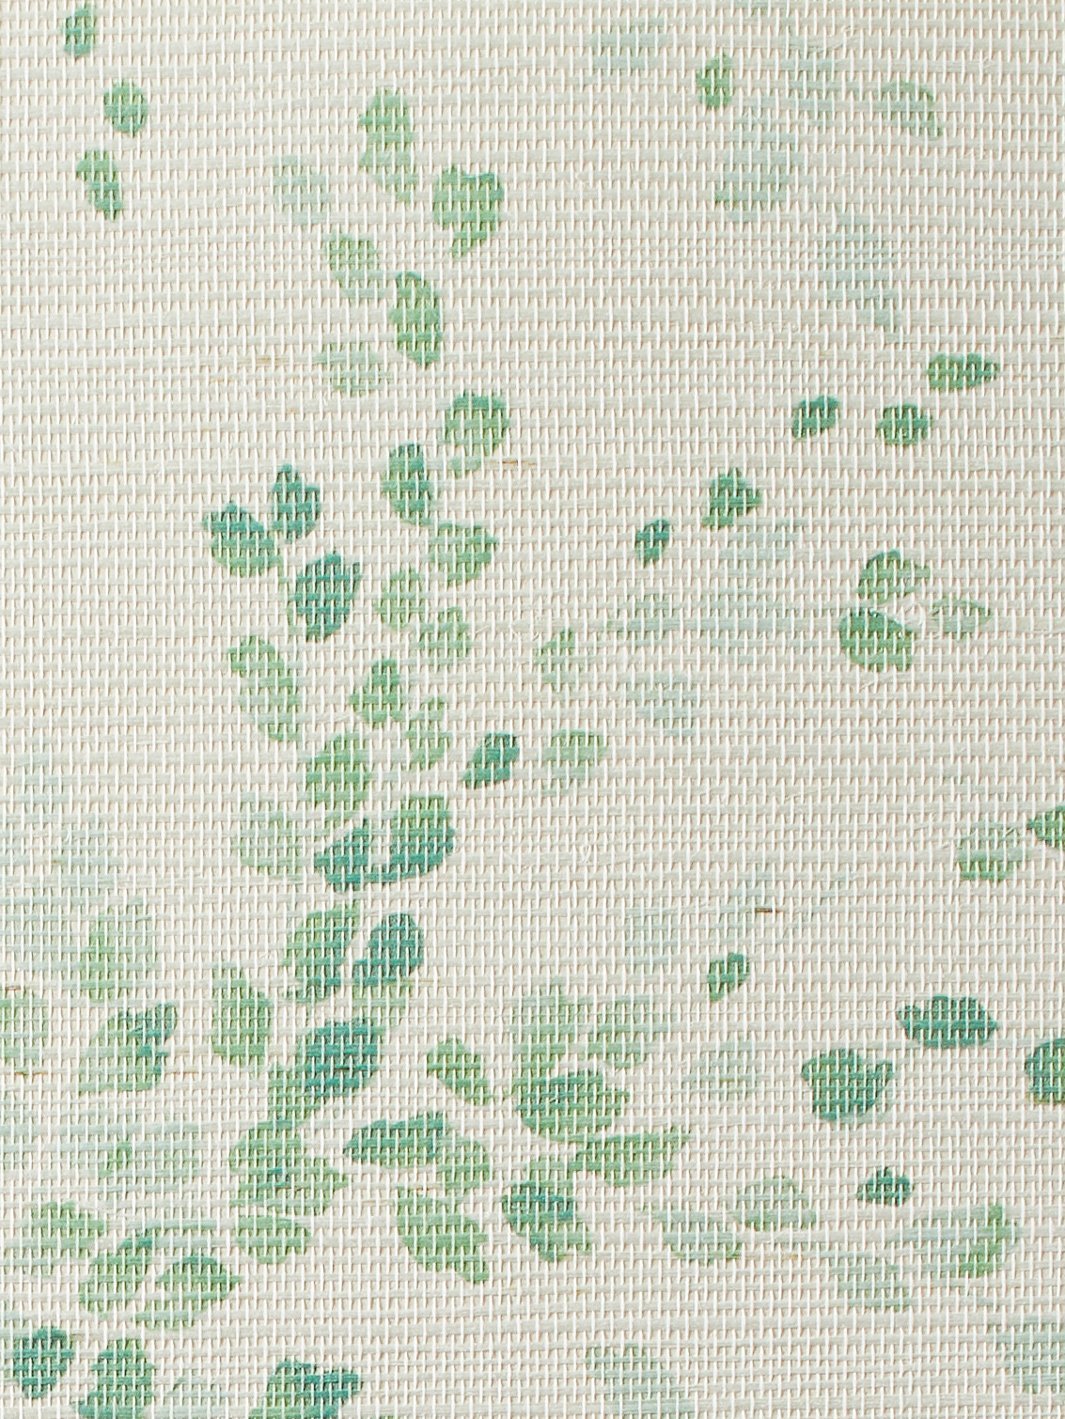 'Sweet Caroline' Grasscloth' Wallpaper by Wallshoppe - Green